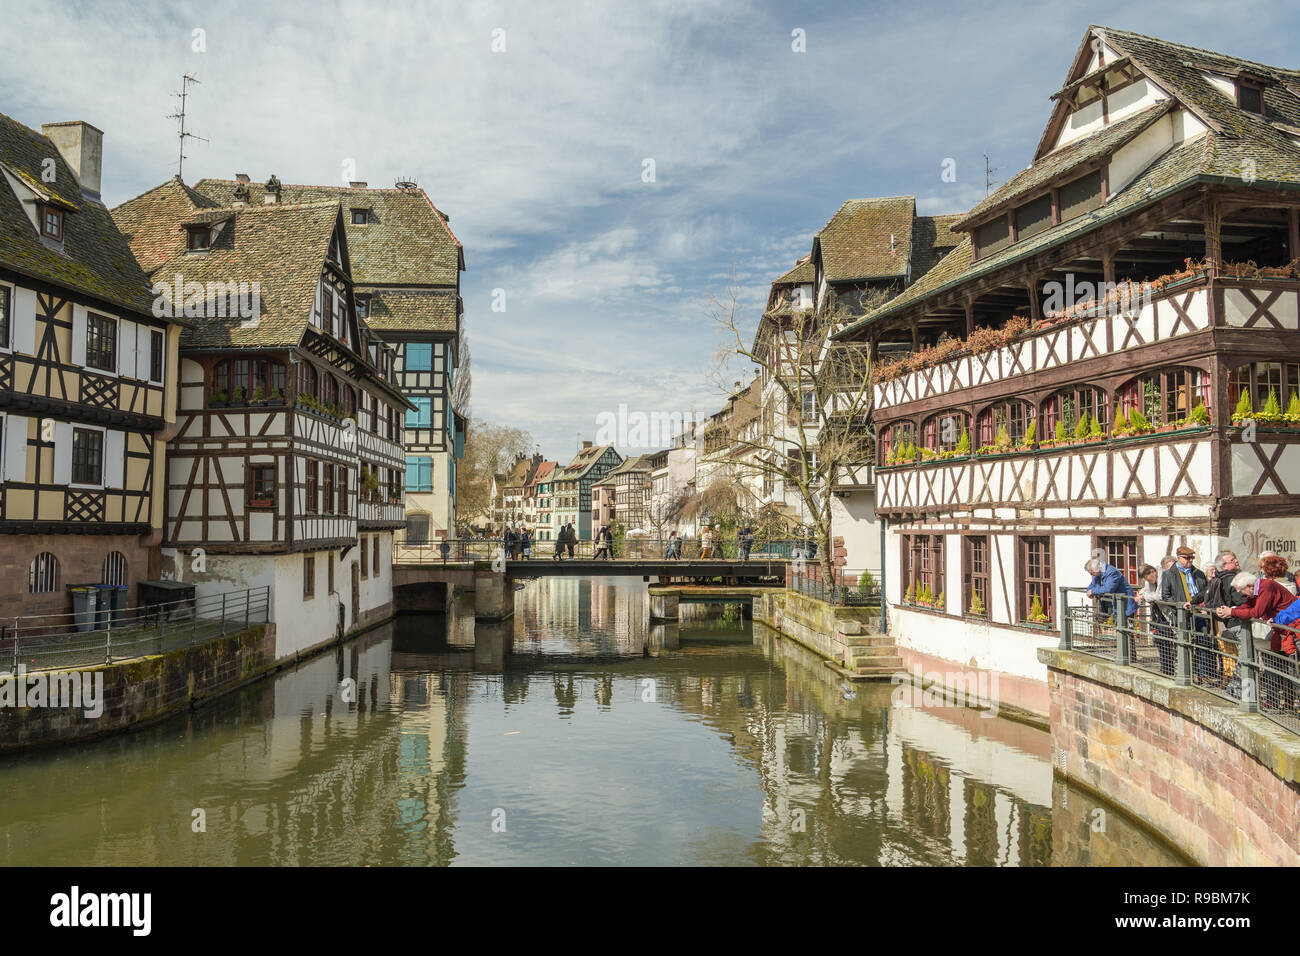 Strasburgo, Francia - 03 Aprile 2018: i turisti in visita a poco Francia distretto a Strasburgo, in Francia durante la primavera del 2018. Questo è uno dei più pictor Foto Stock